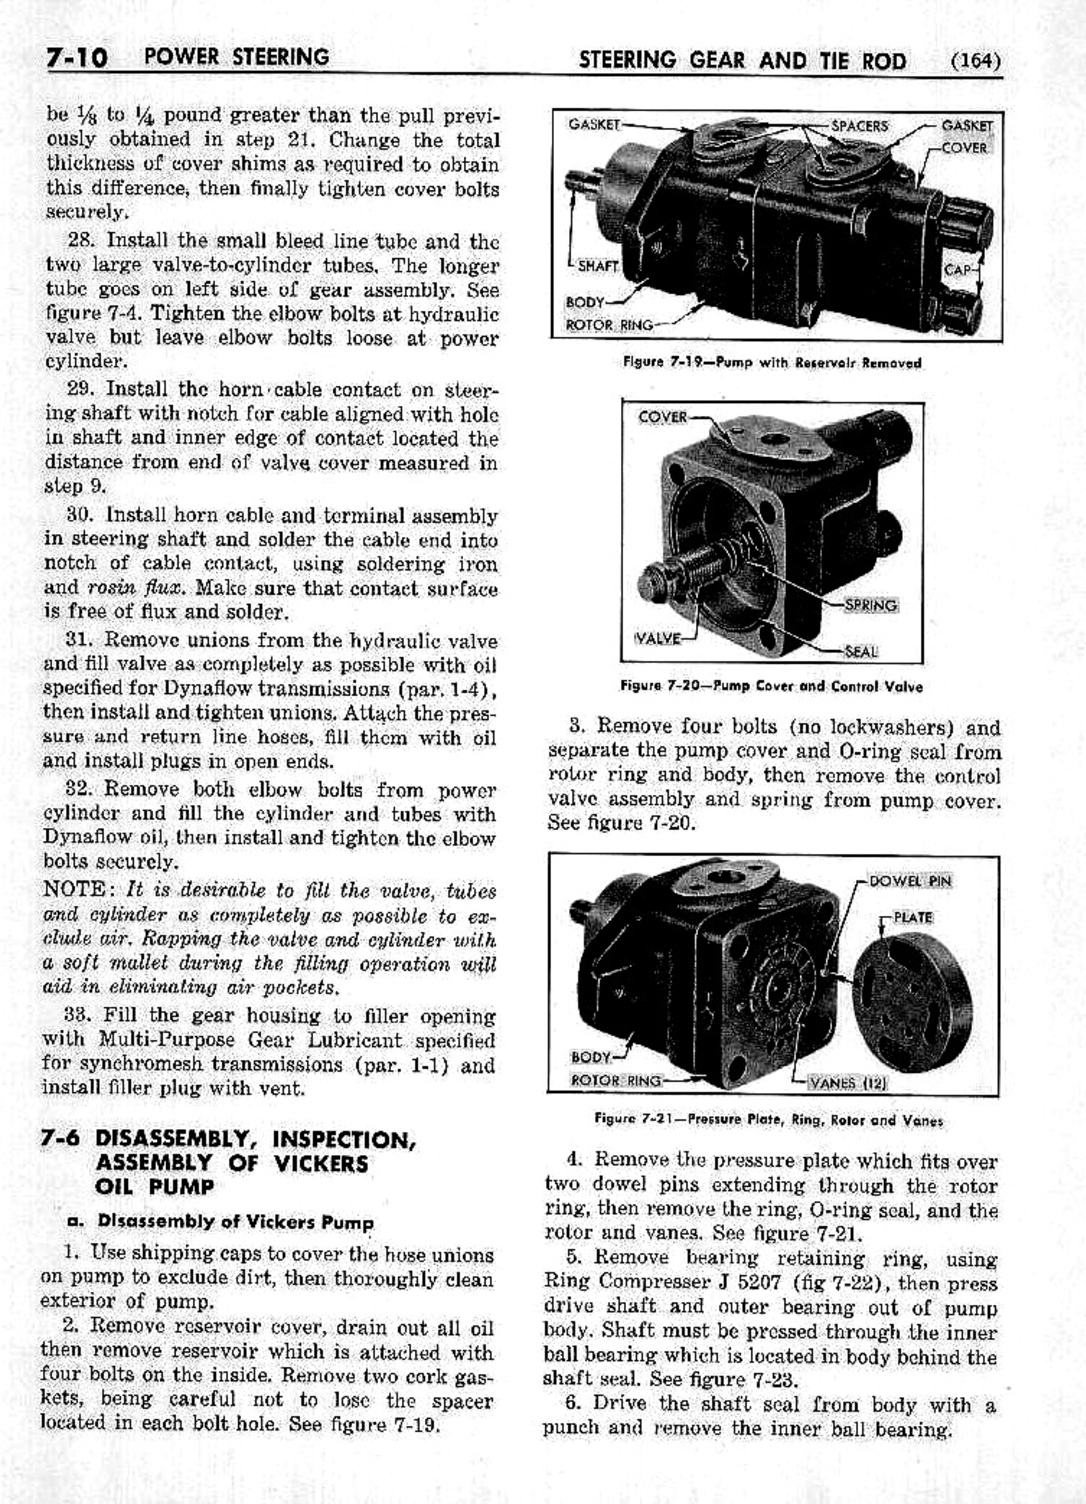 n_08 1953 Buick Shop Manual - Steering-010-010.jpg